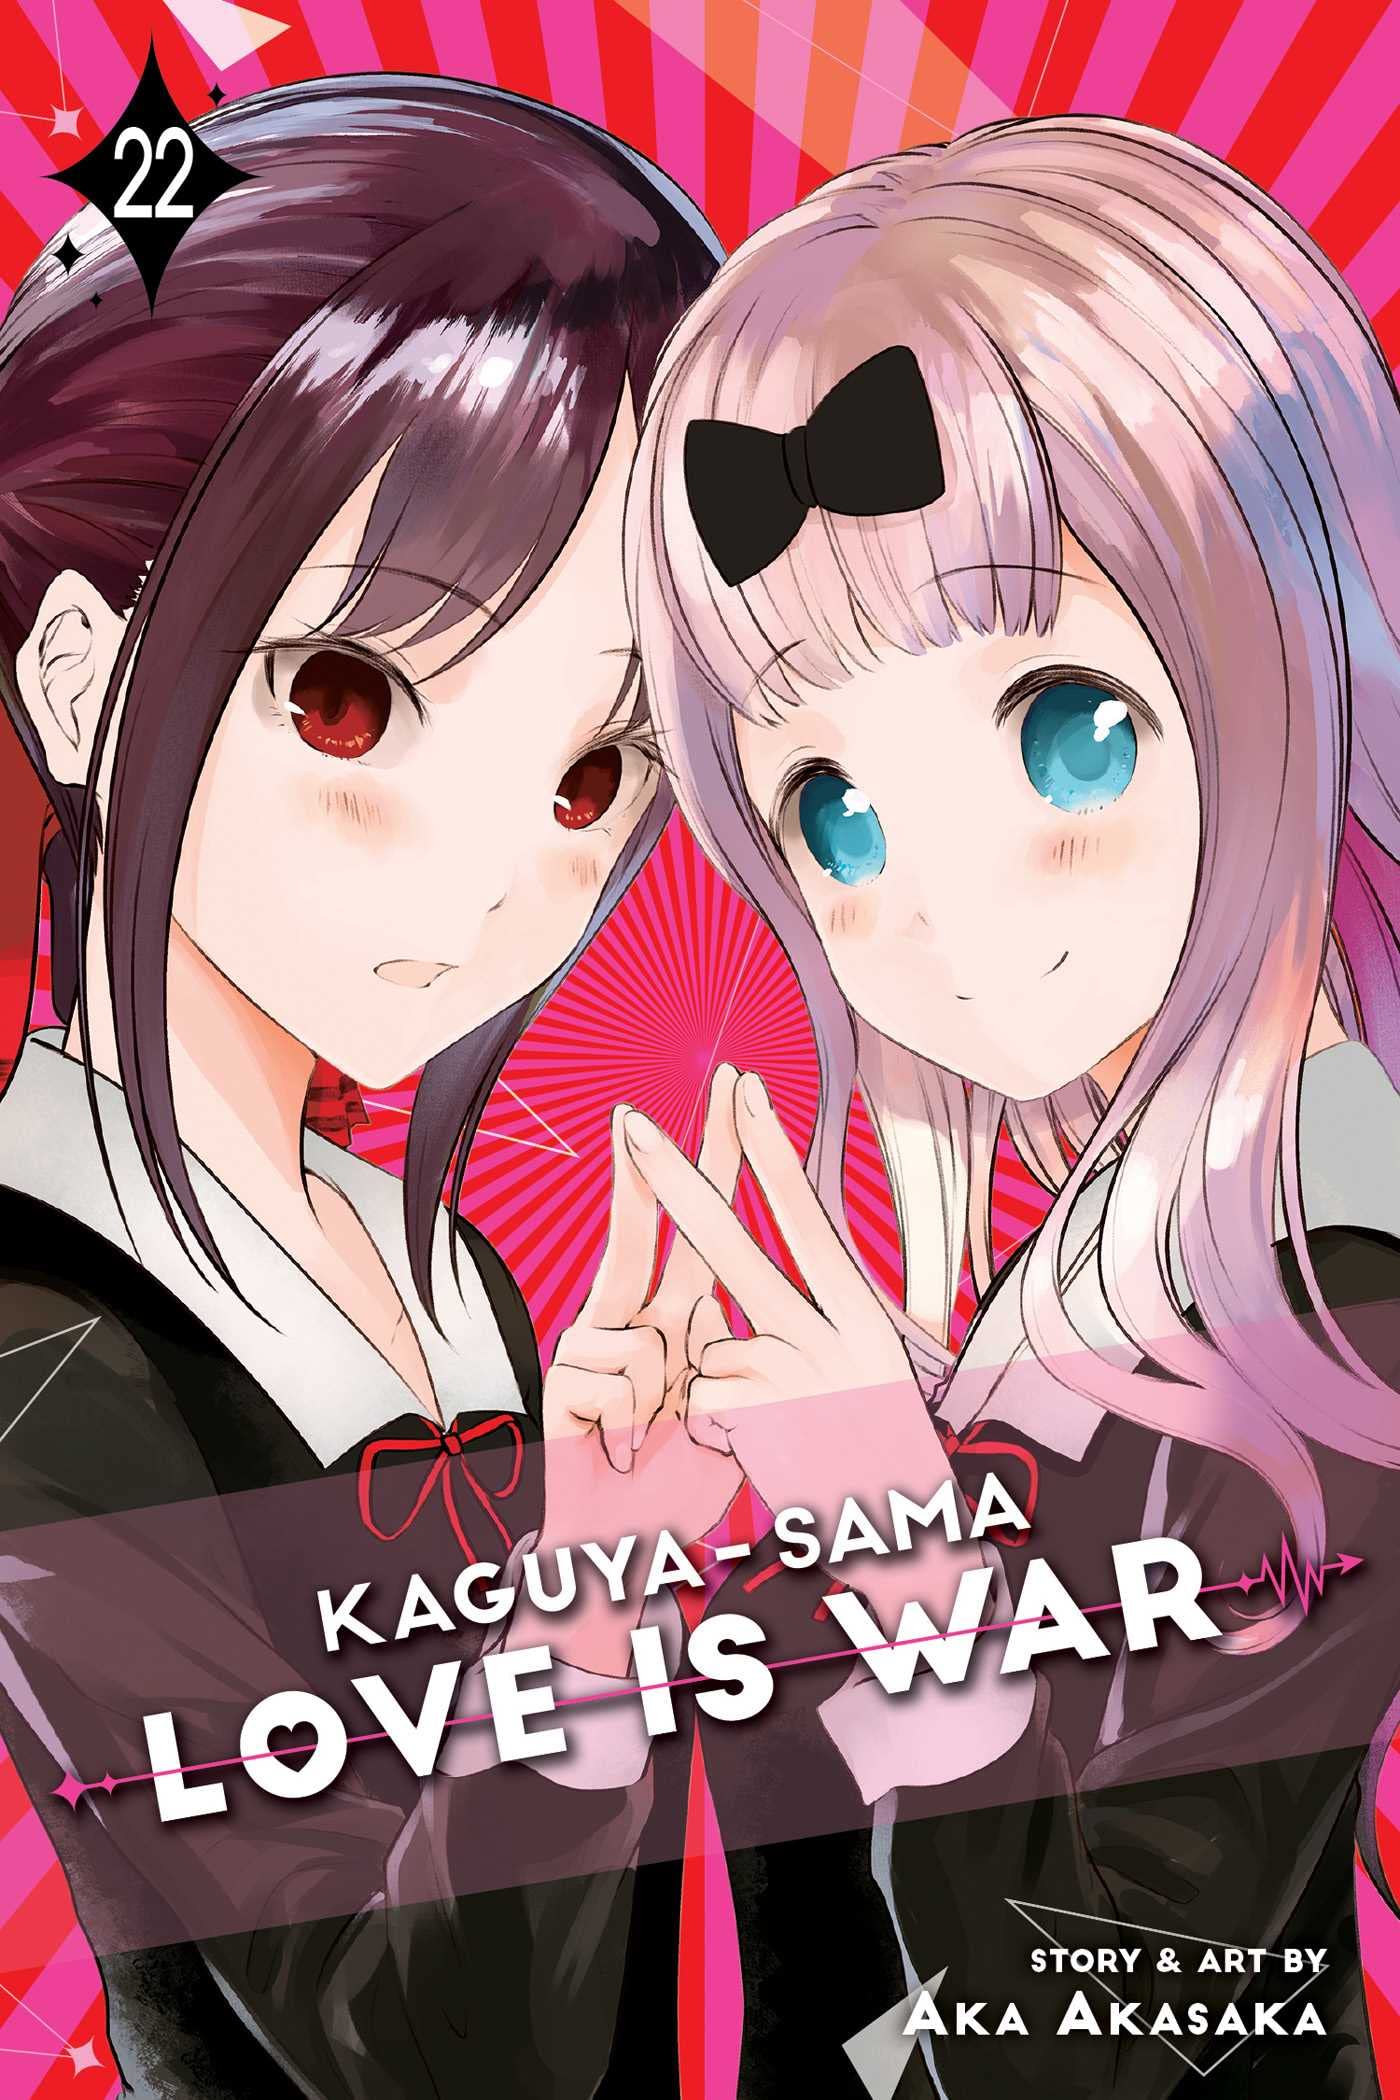 Kaguya-sama: Love Is War Vol. 22